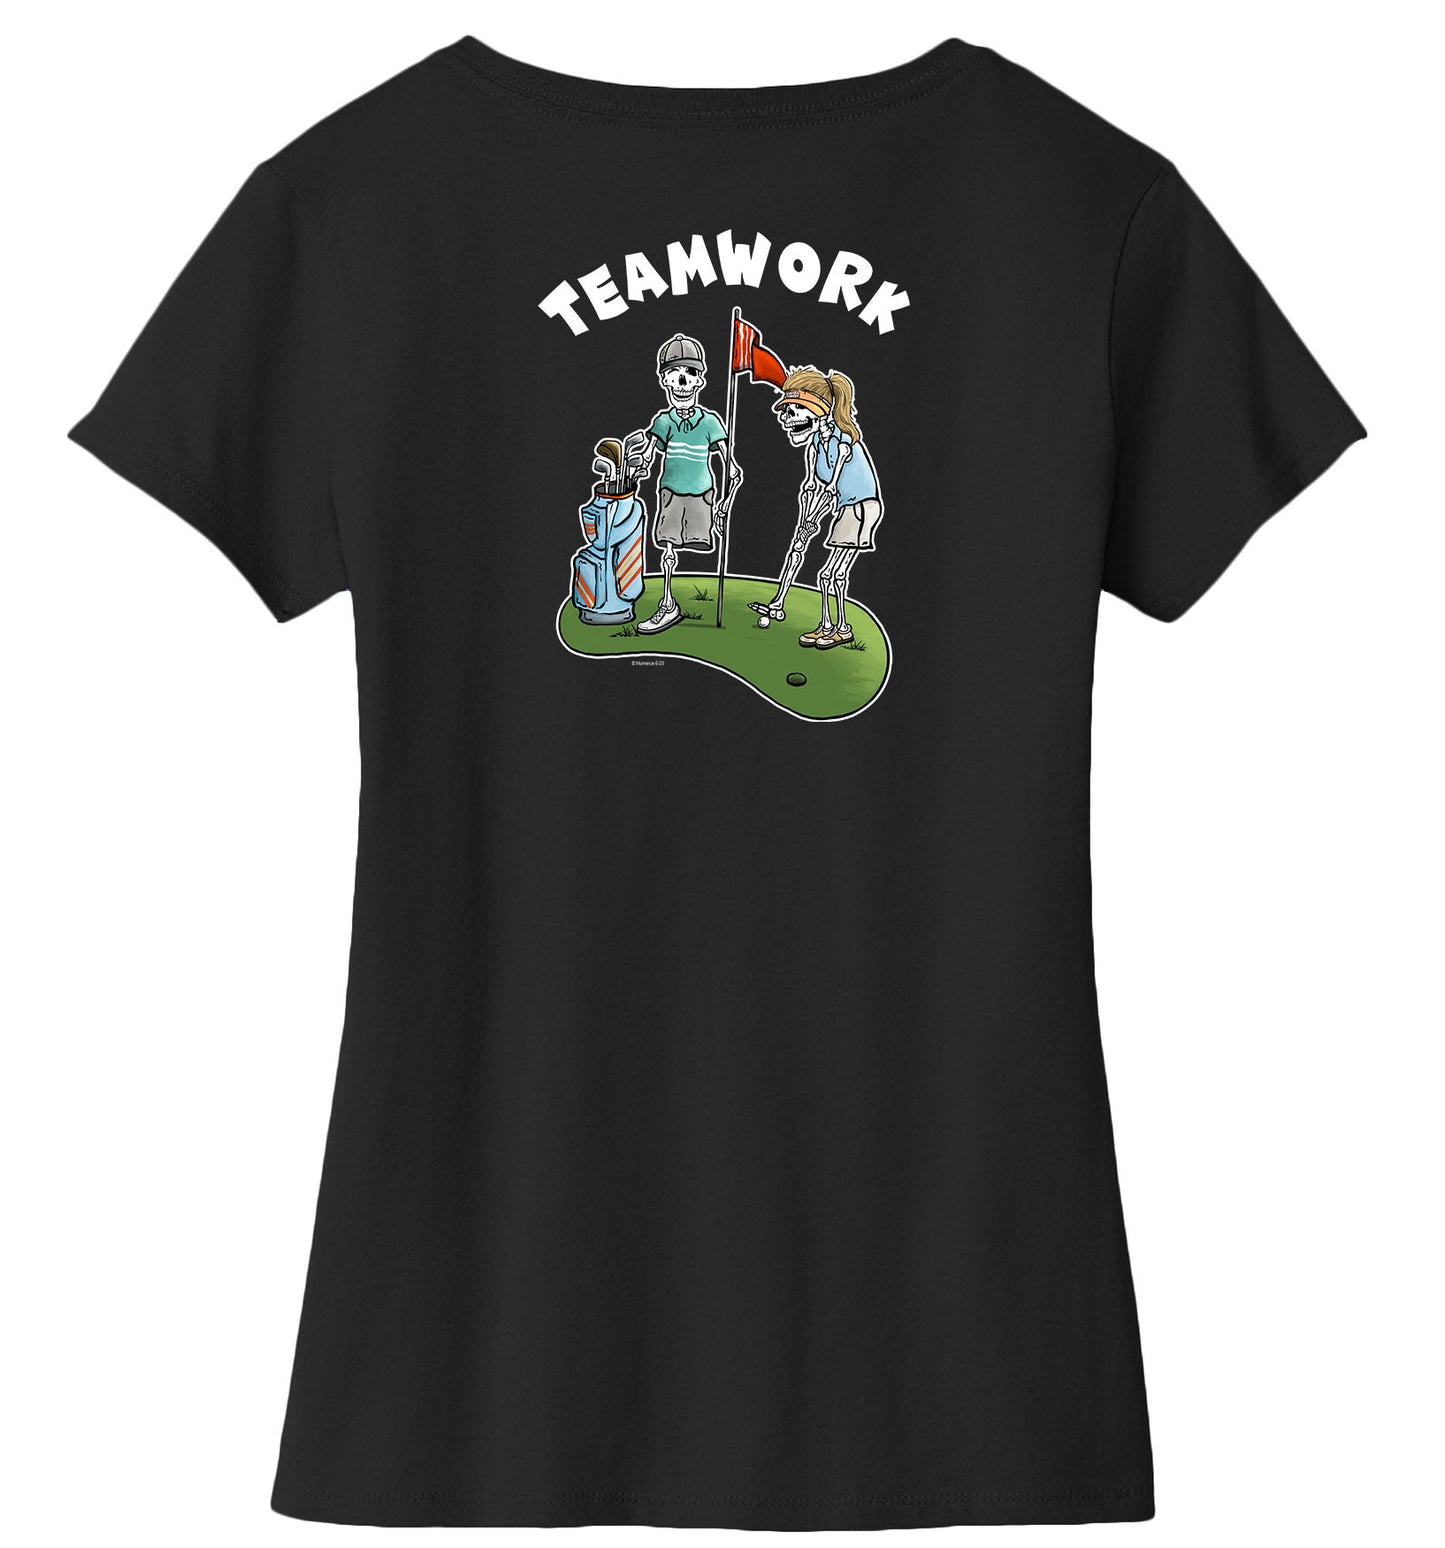 Teamwork - Women's Short Sleeve T-Shirt